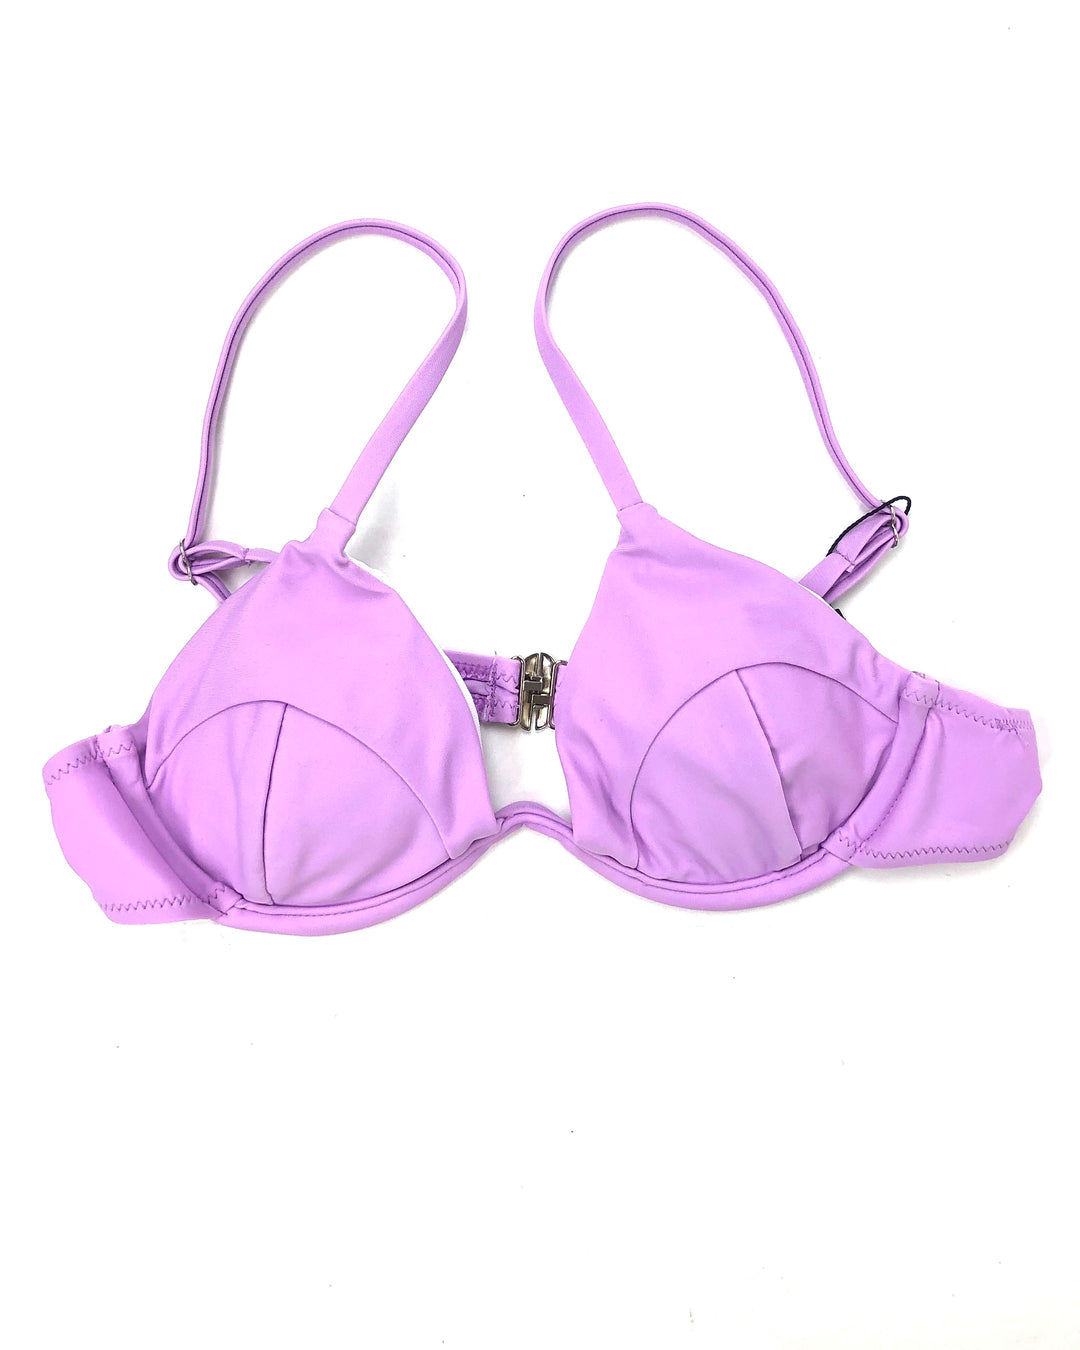 Lavender Bikini Top- Small